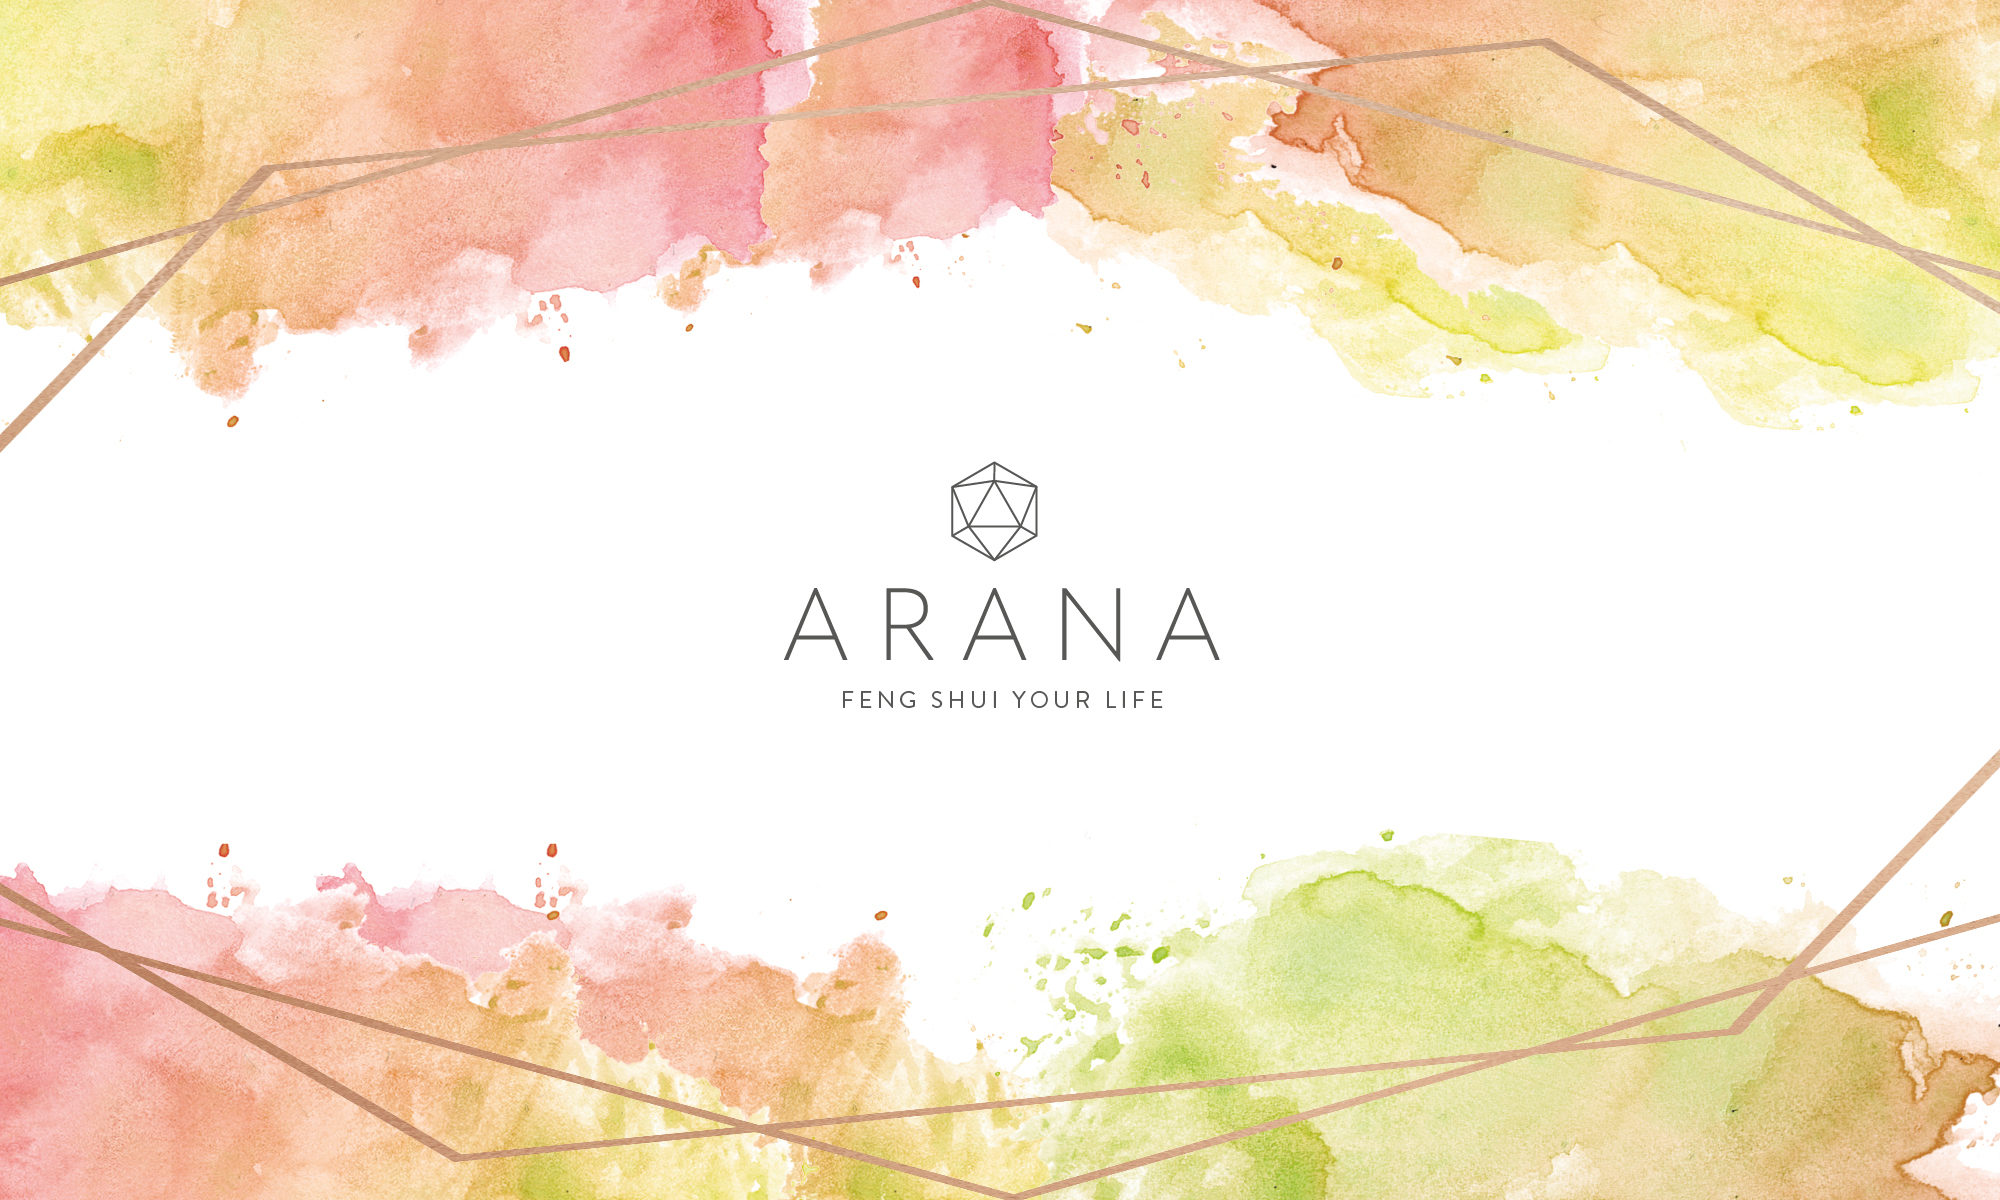 Arana - Feng Shui your Life